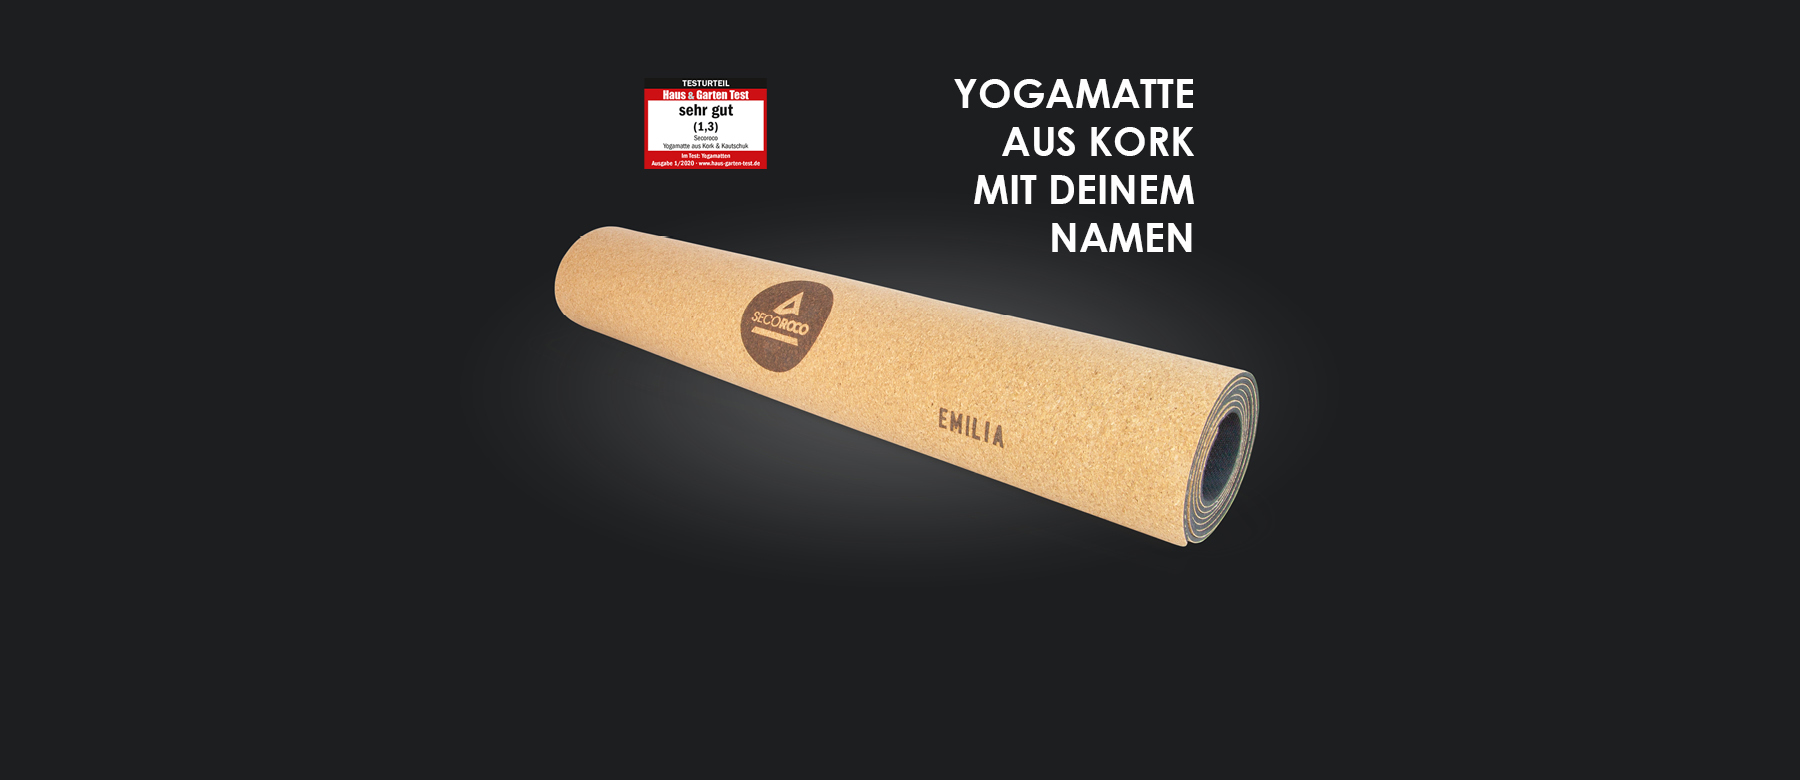 inkl getestet mit SEHR GUT Yogamatte aus Kork 5 mm Yogablock und Yogatasche 